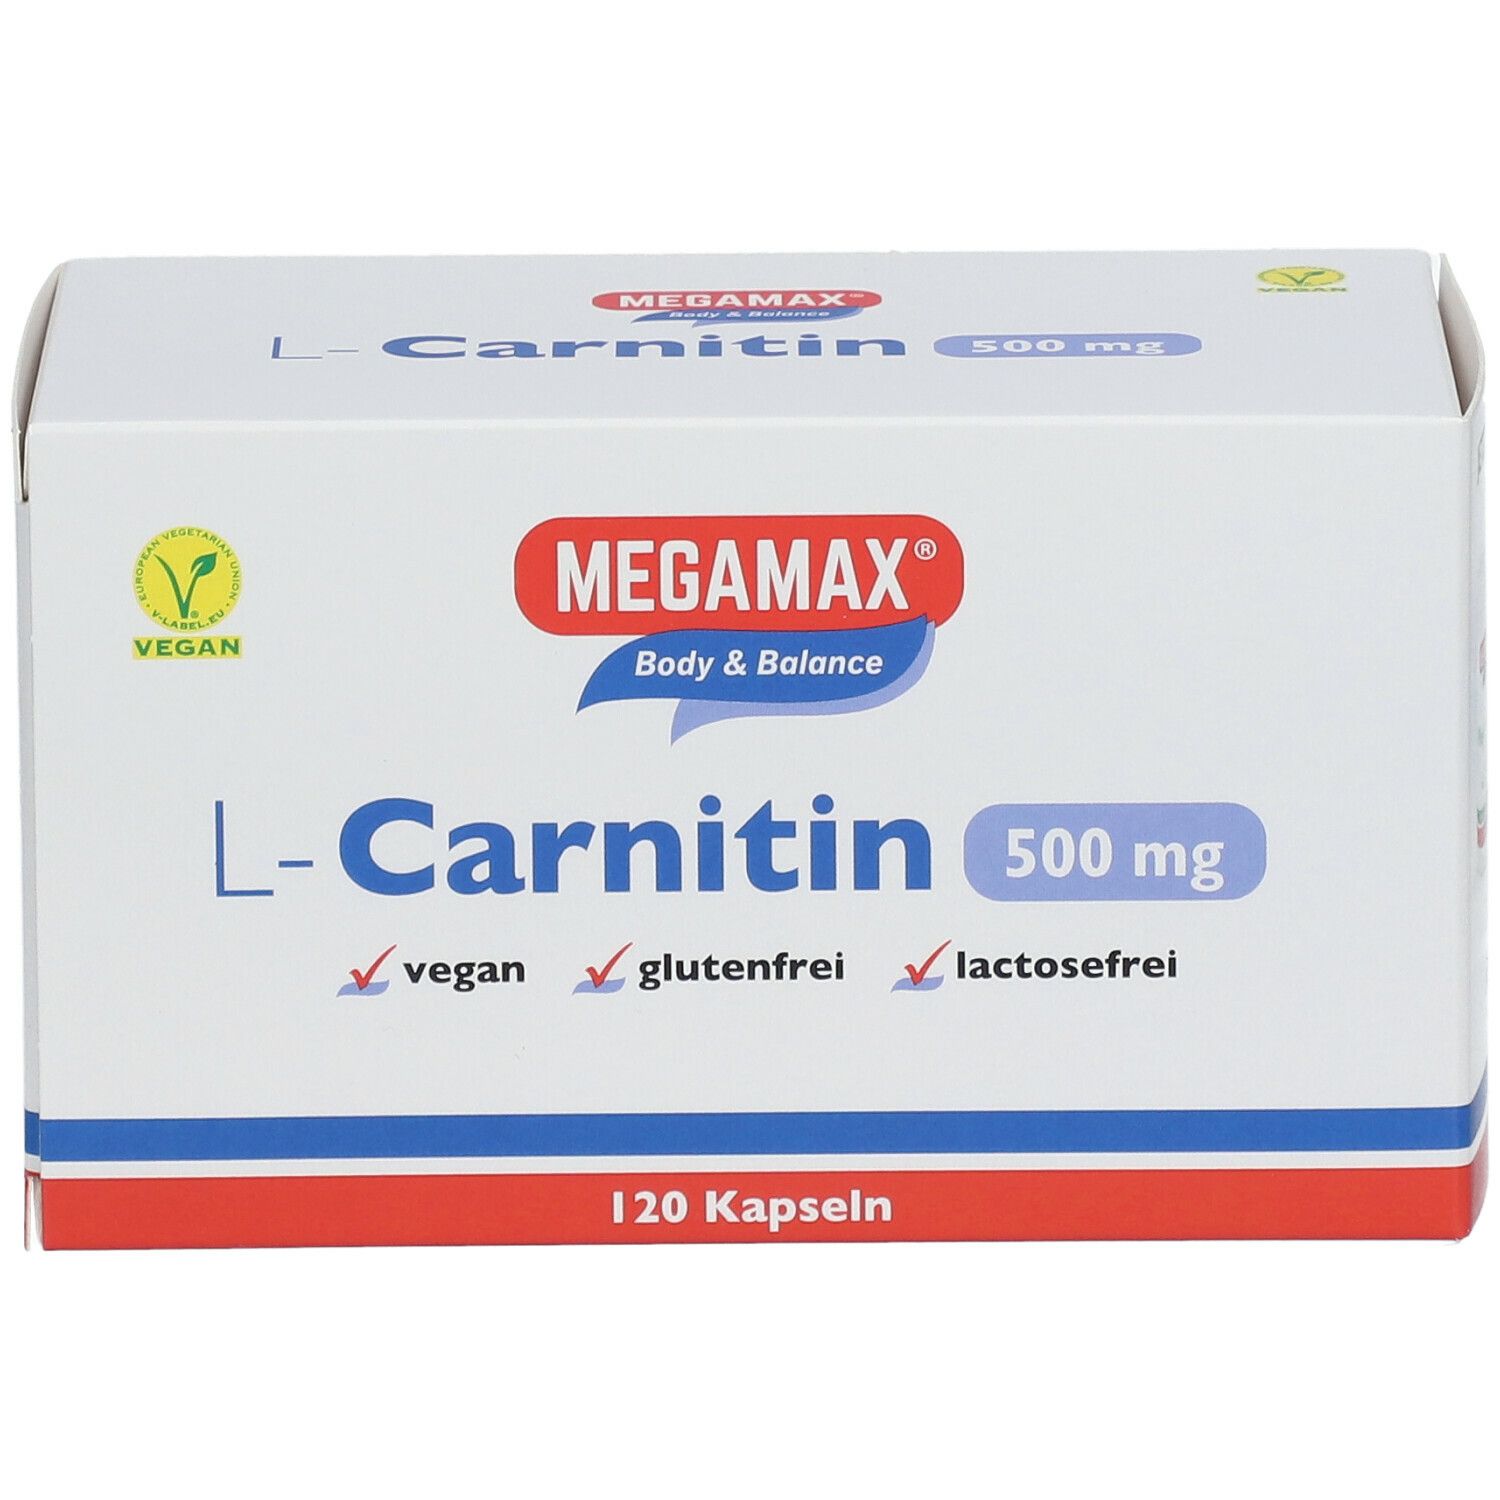 MEGAMAX® Figur & Balance L-Carnitin 500 mg